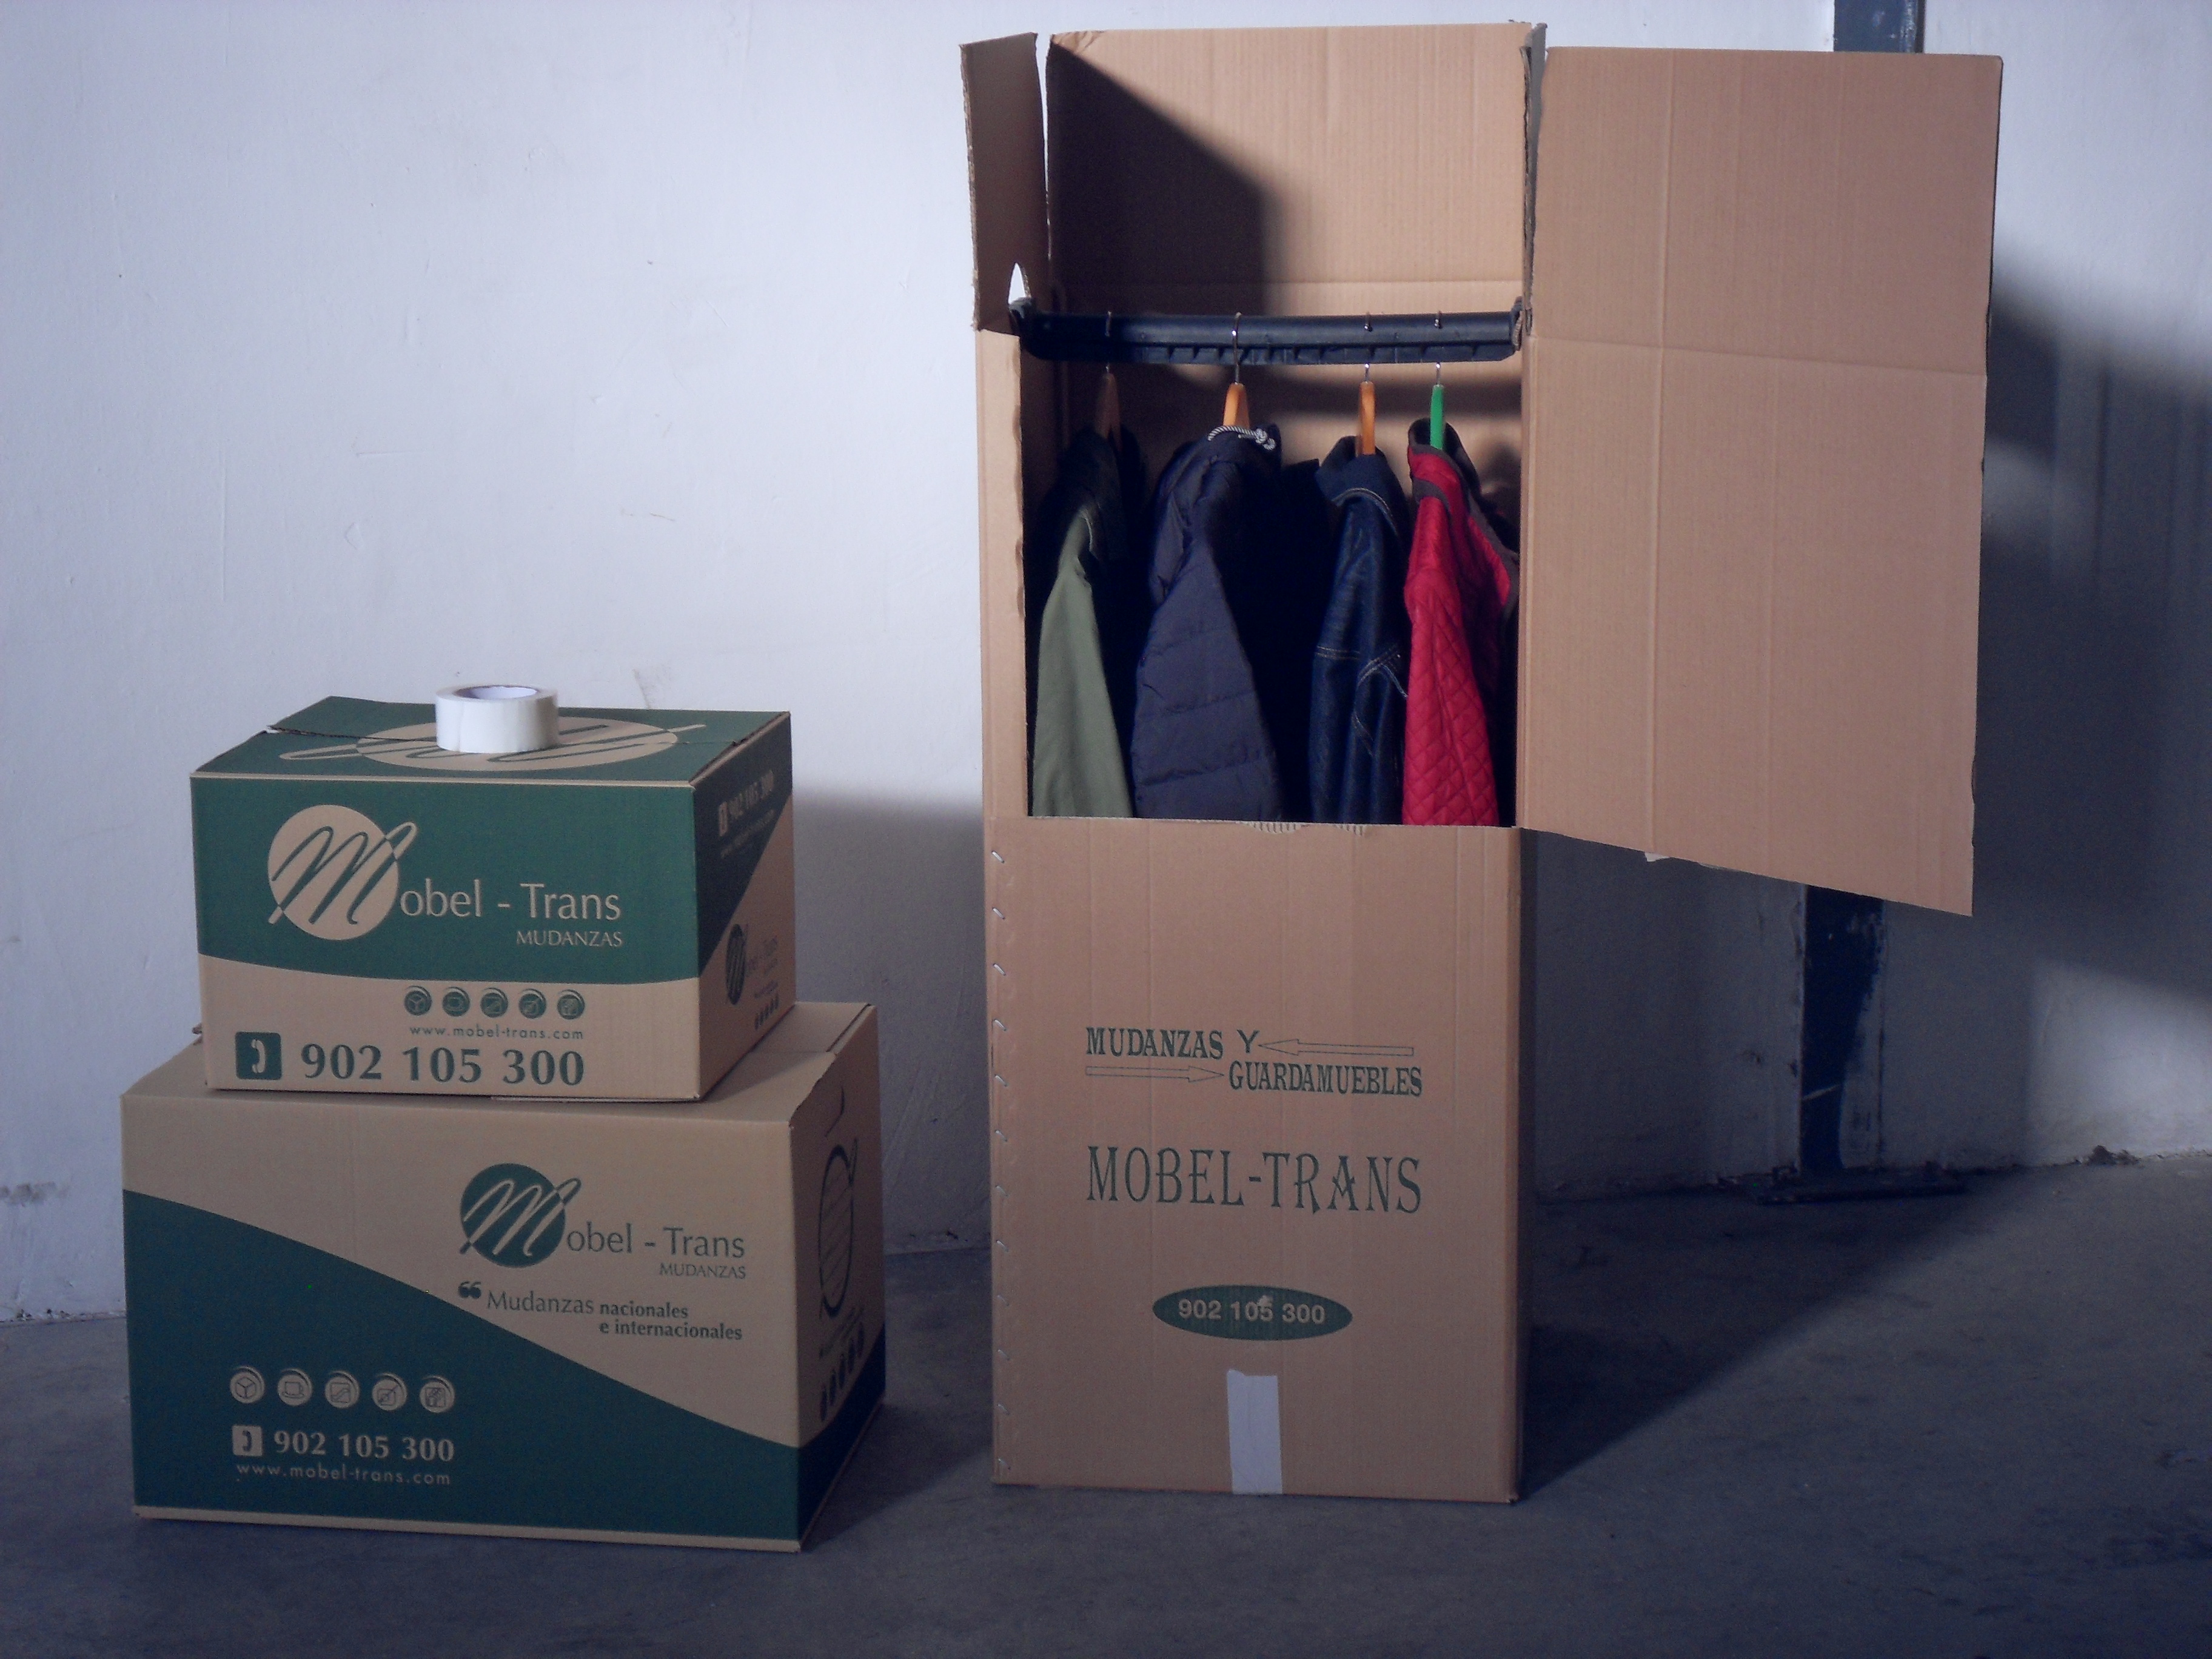 Cómo organizar la ropa para la mudanza? – The Home Depot Blog